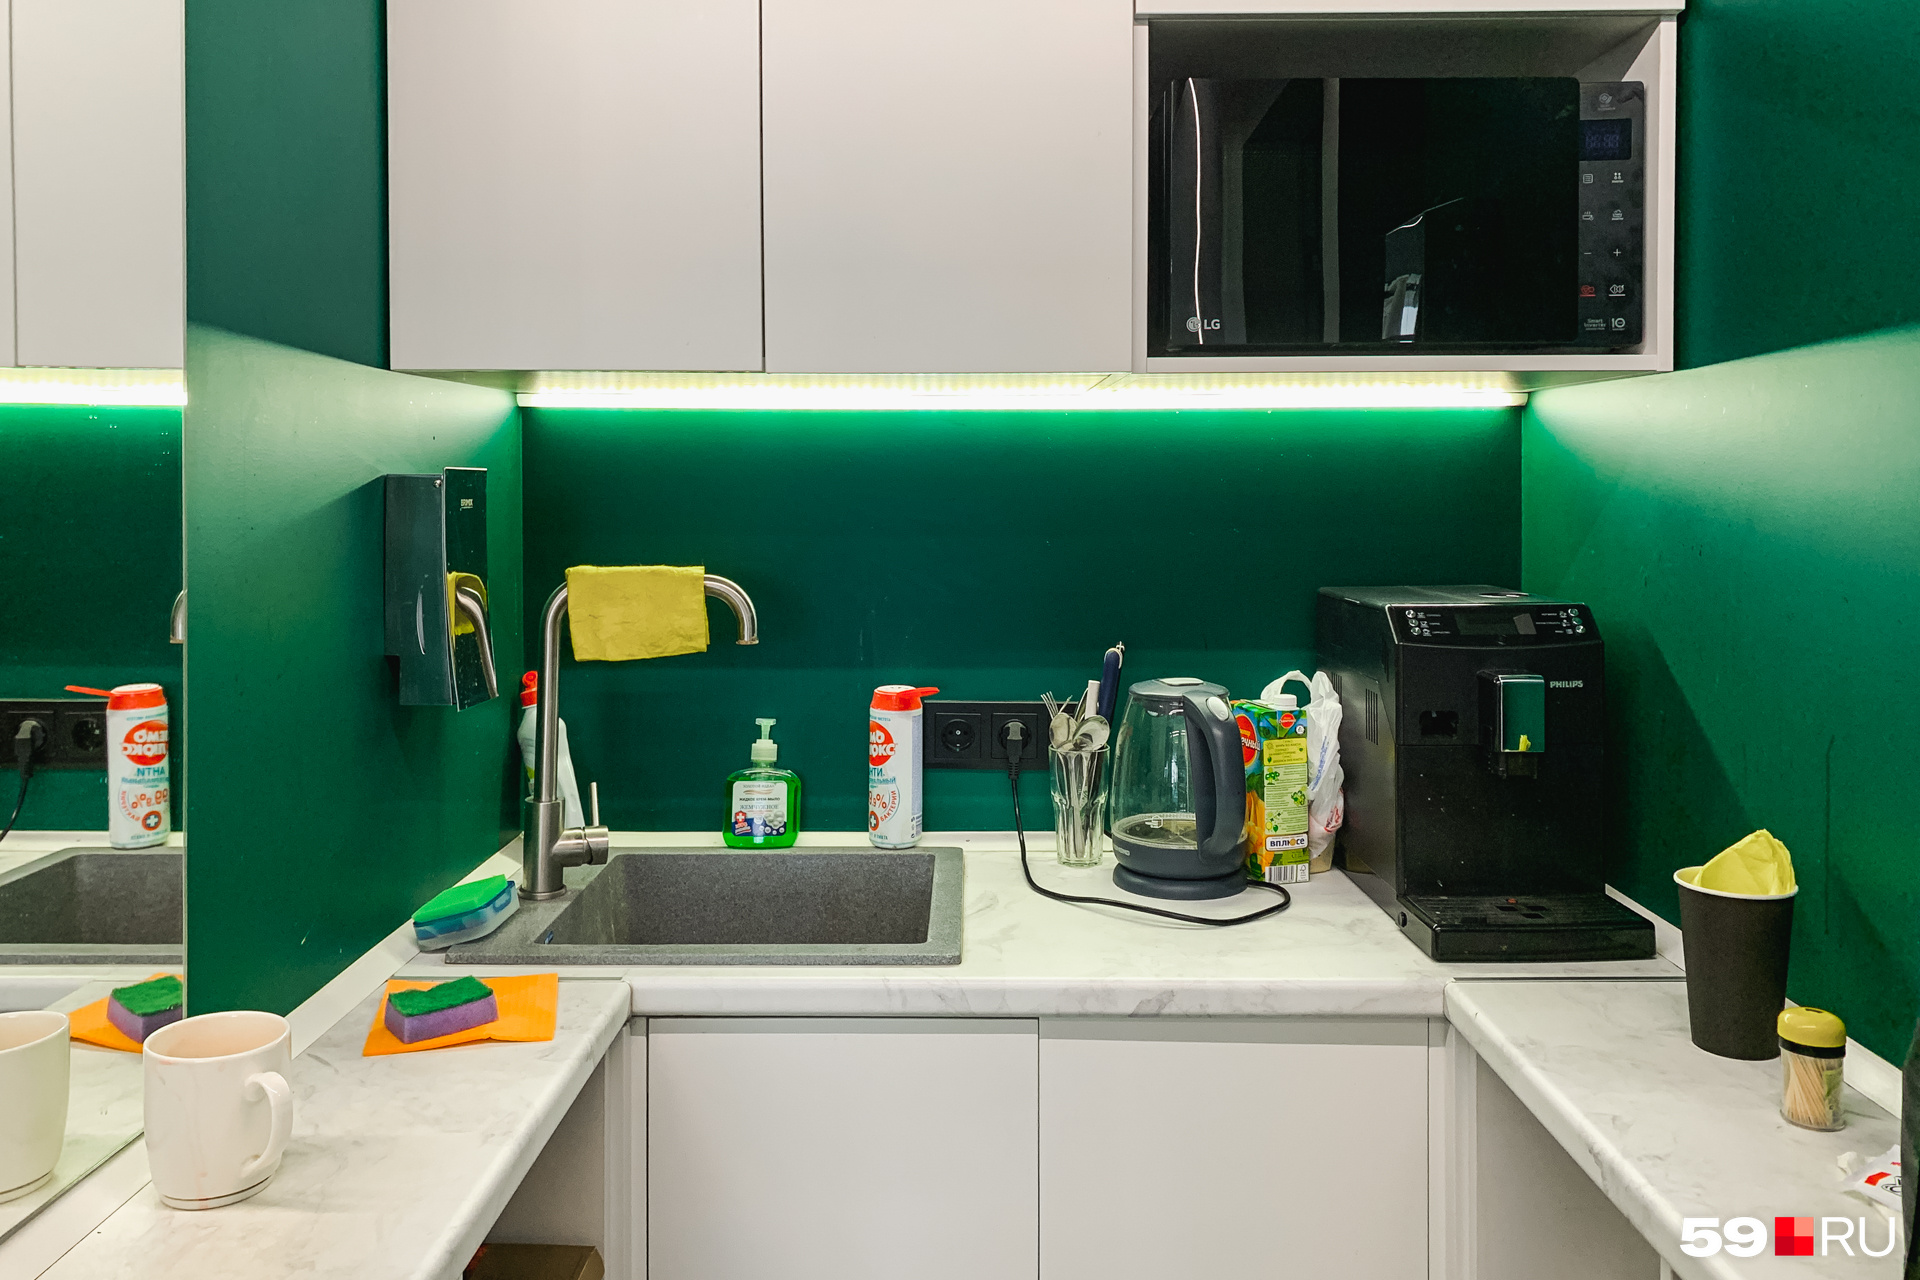 Небольшая кухонька с микроволновкой и кофеваркой: чтобы перекусить, не нужно спускаться на другие этажи